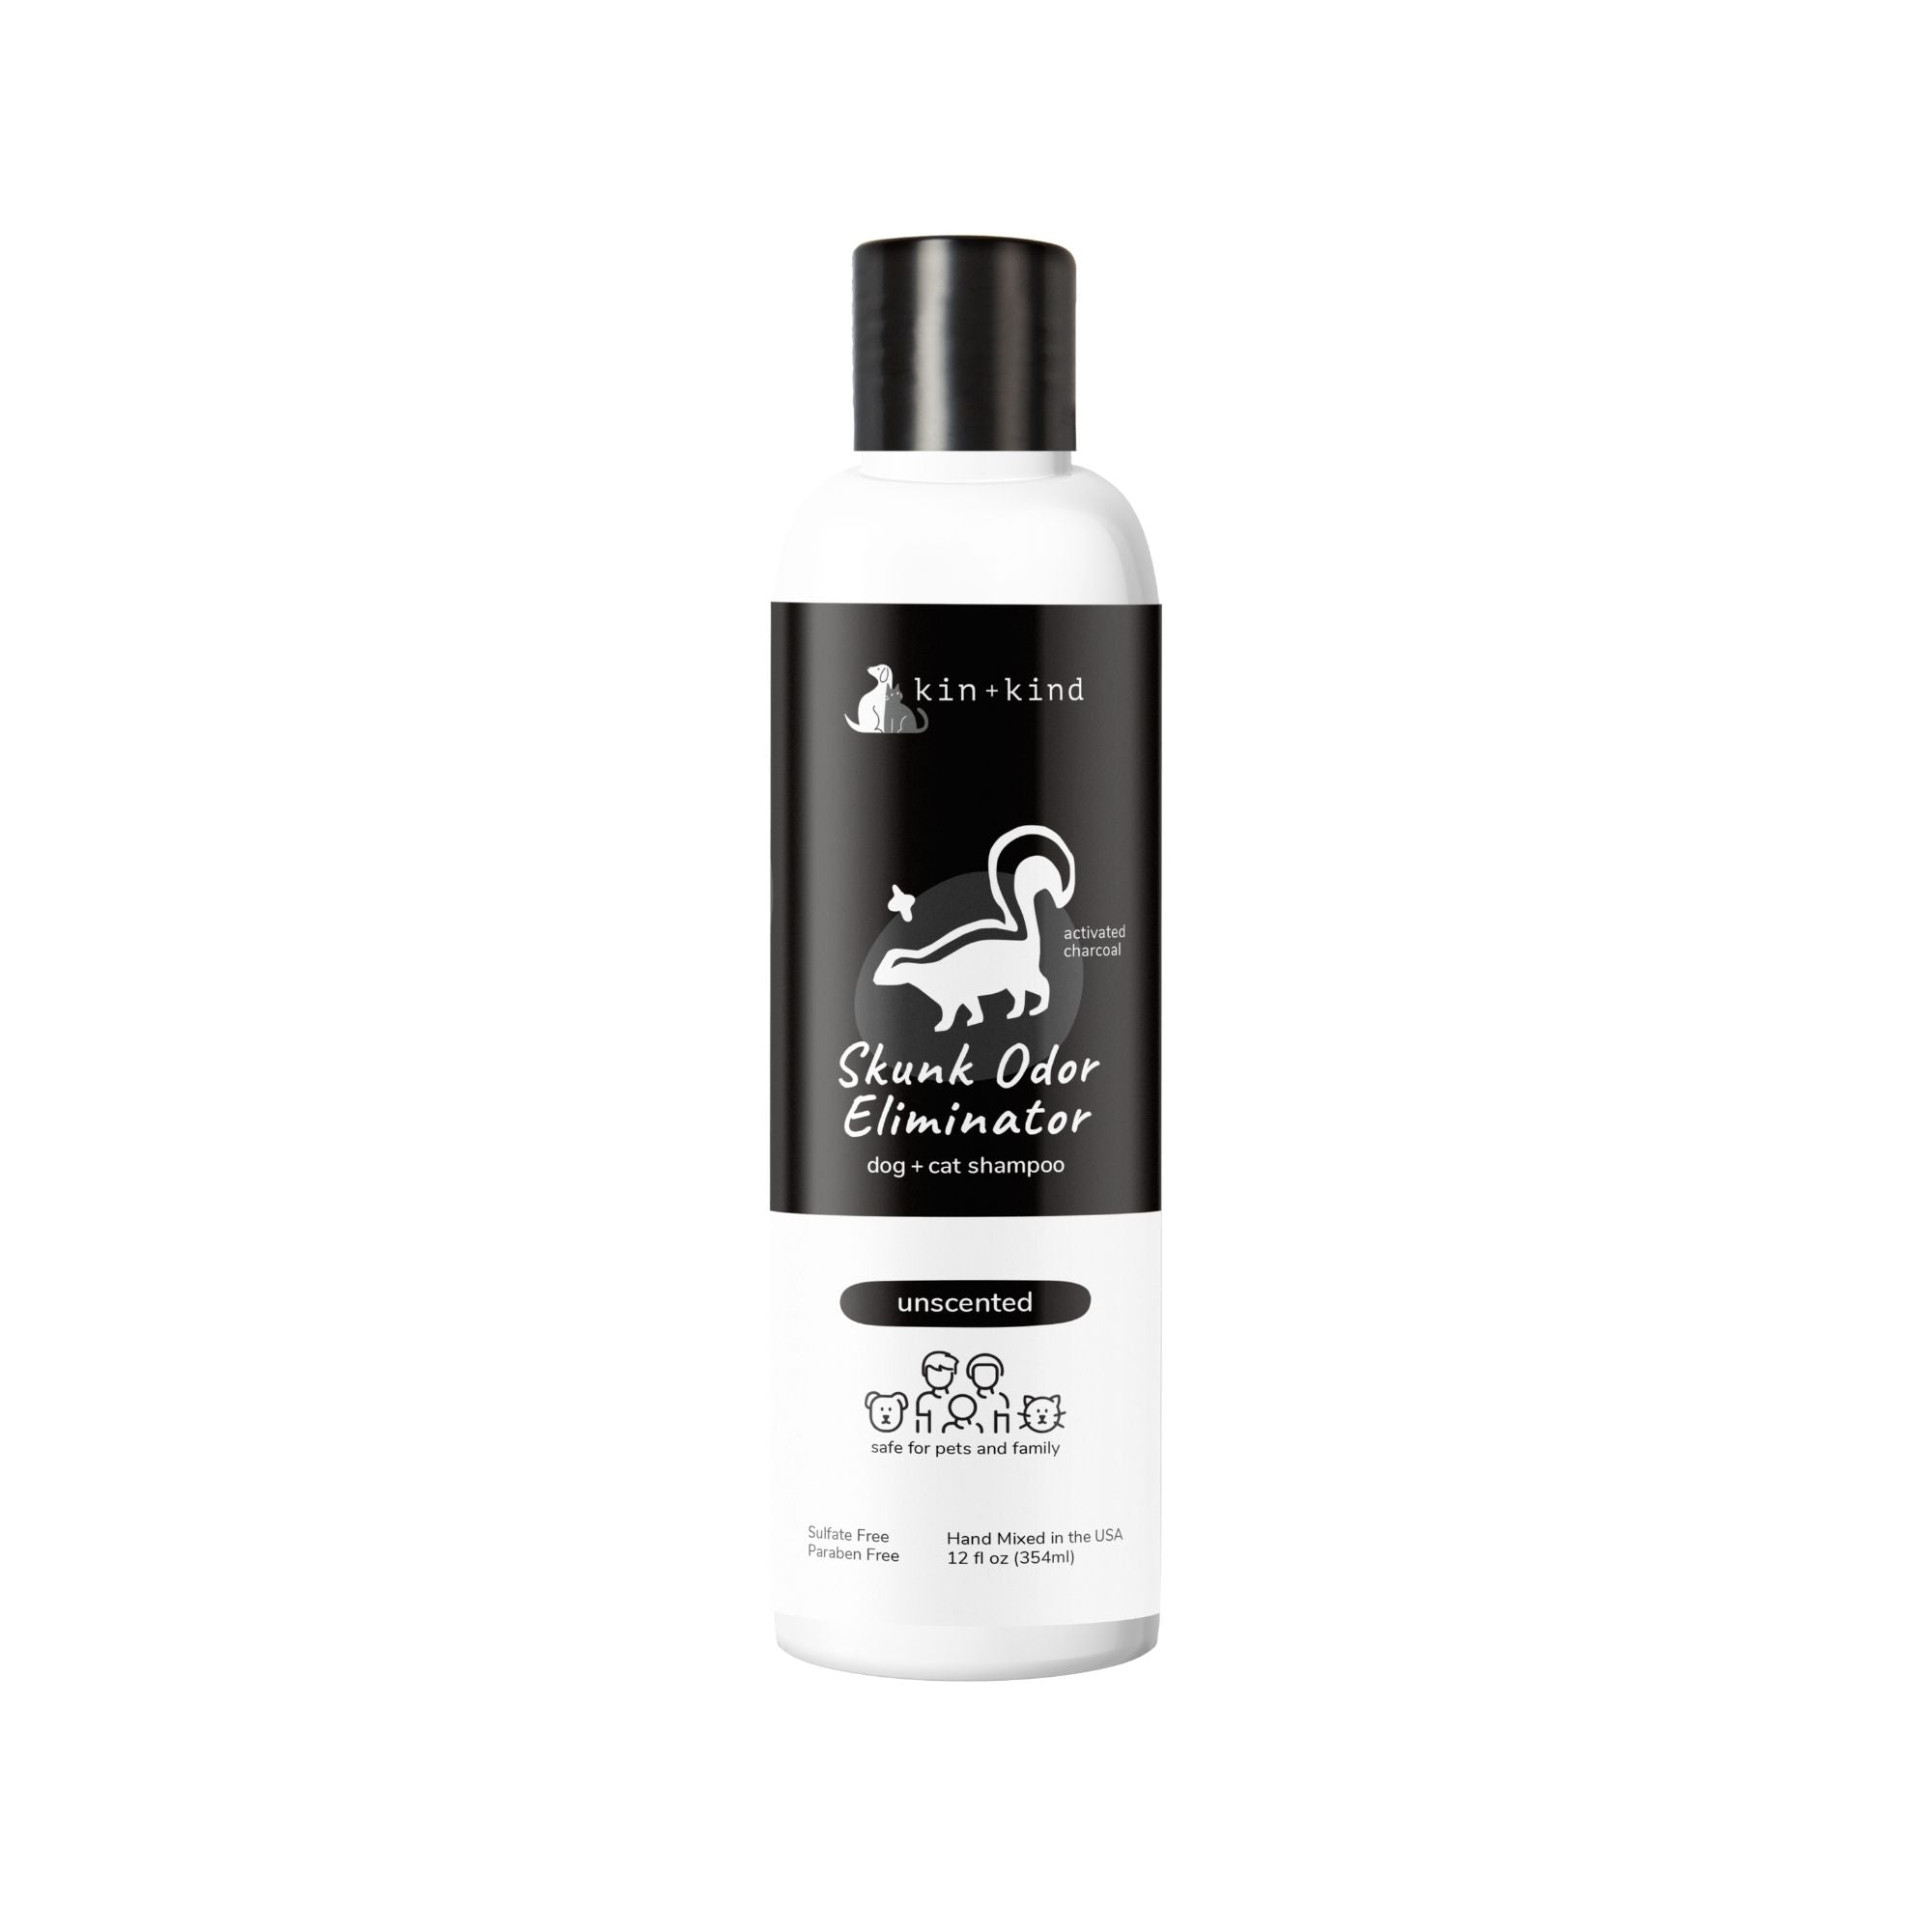 Kin + Kind Skunk Odor Eliminator Natural Shampoo for Dogs & Cats Unscented, 12 oz - Mutts & Co.